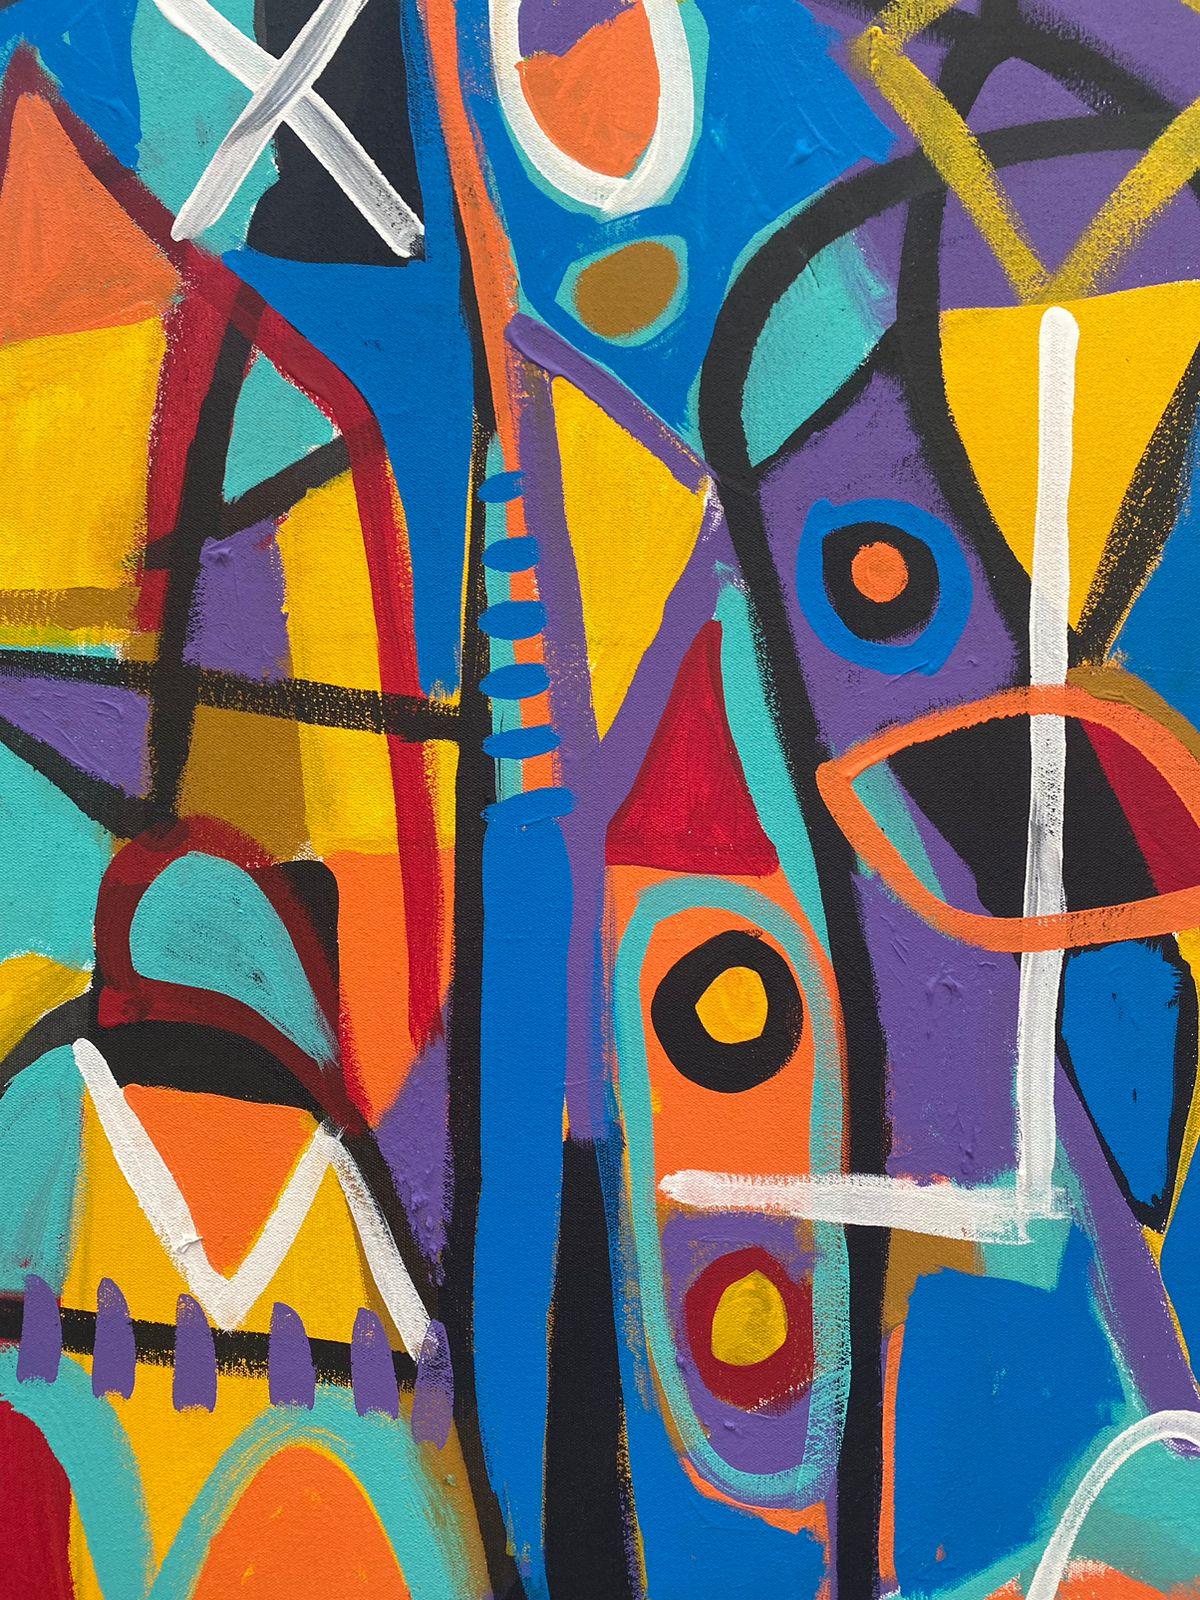 Art contemporain, peinture abstraite
Acrylique sur toile
150x200cm
Signé 
LIVRAISON GRATUITE ROLLE


A propos de l'artiste
Enrique Pichardo (Mexico, 1973) est diplômé de l'Escuela Nacional de Pintura, Escultura y Grabado (ENPEG) 